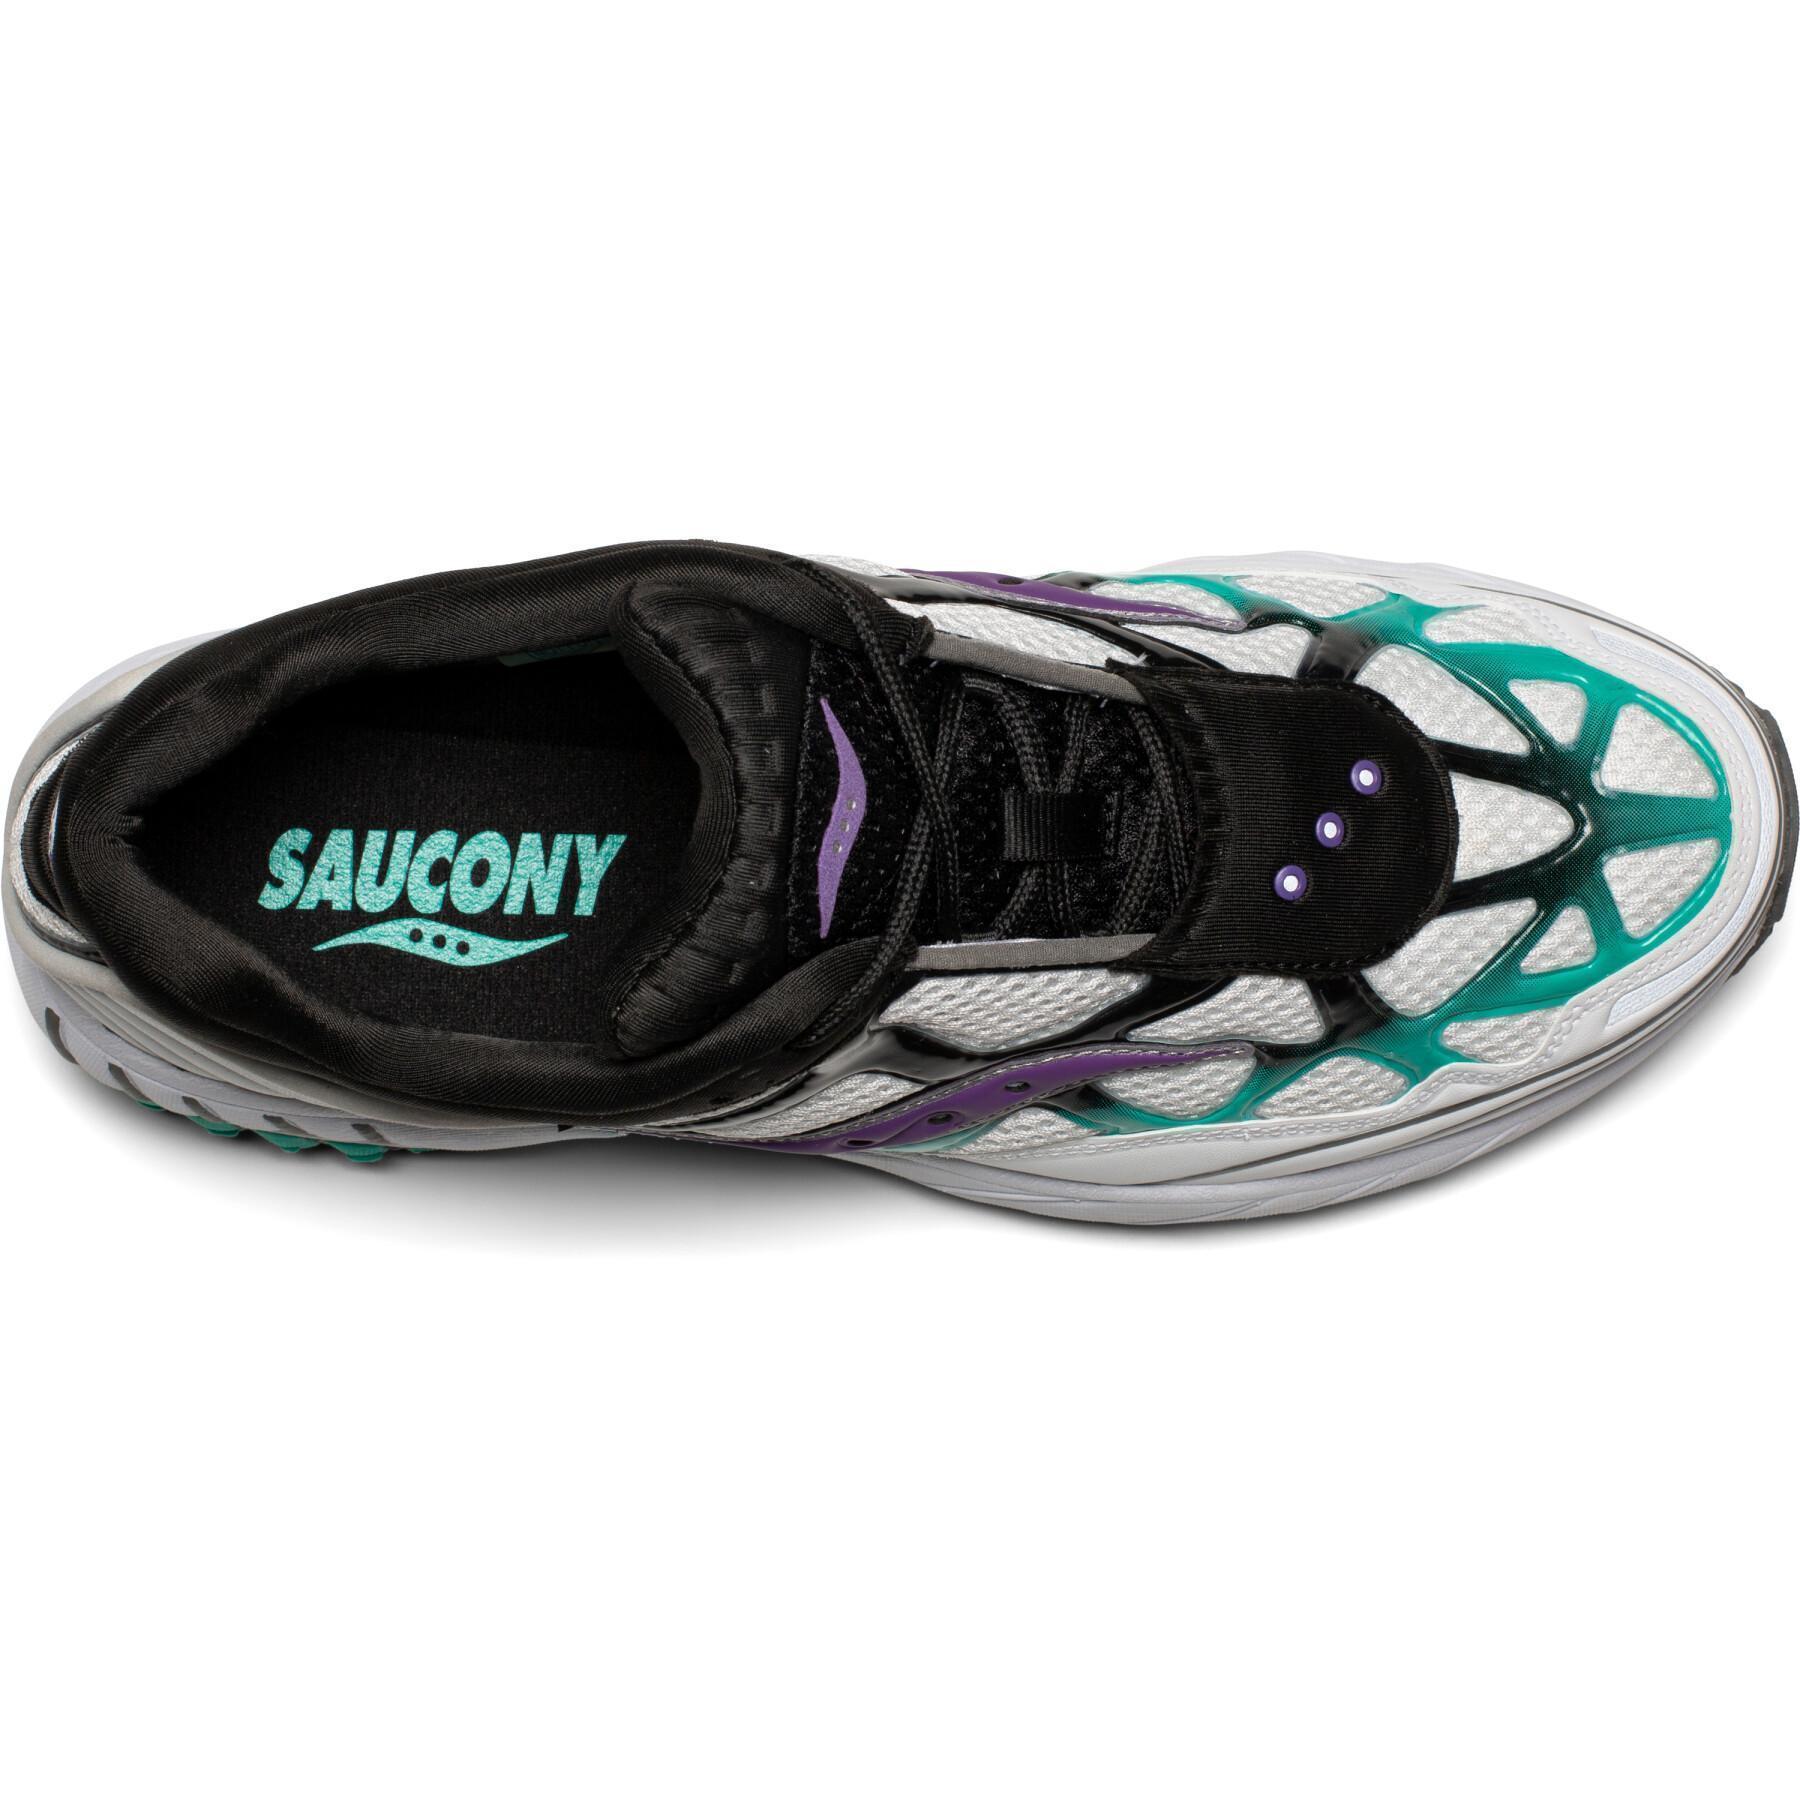 Saucony grid web schoenen